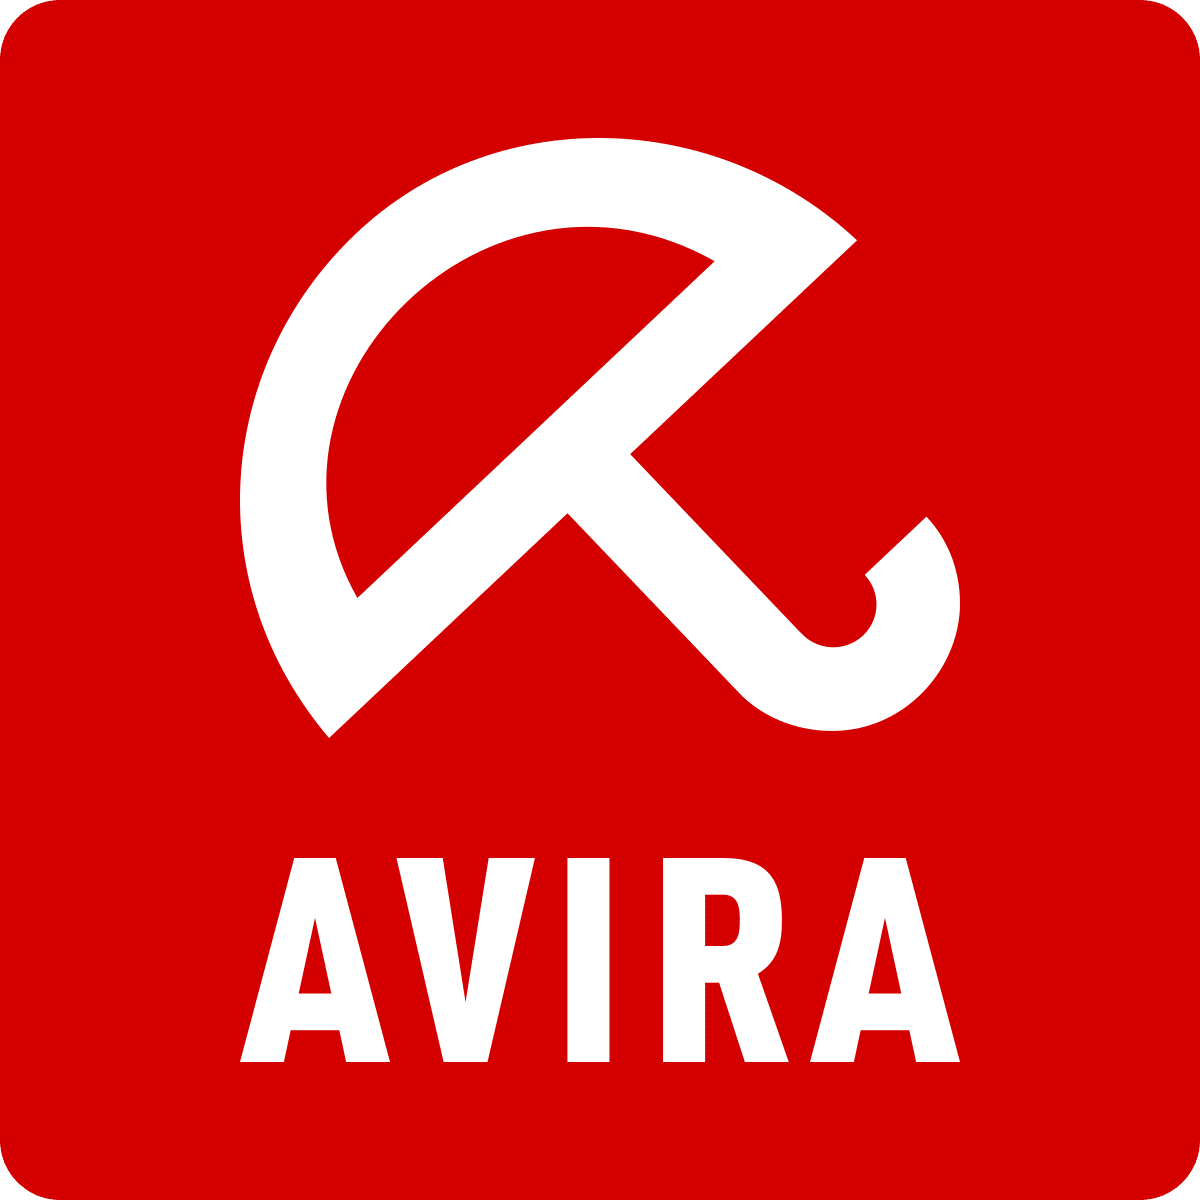 avira download free windows 10